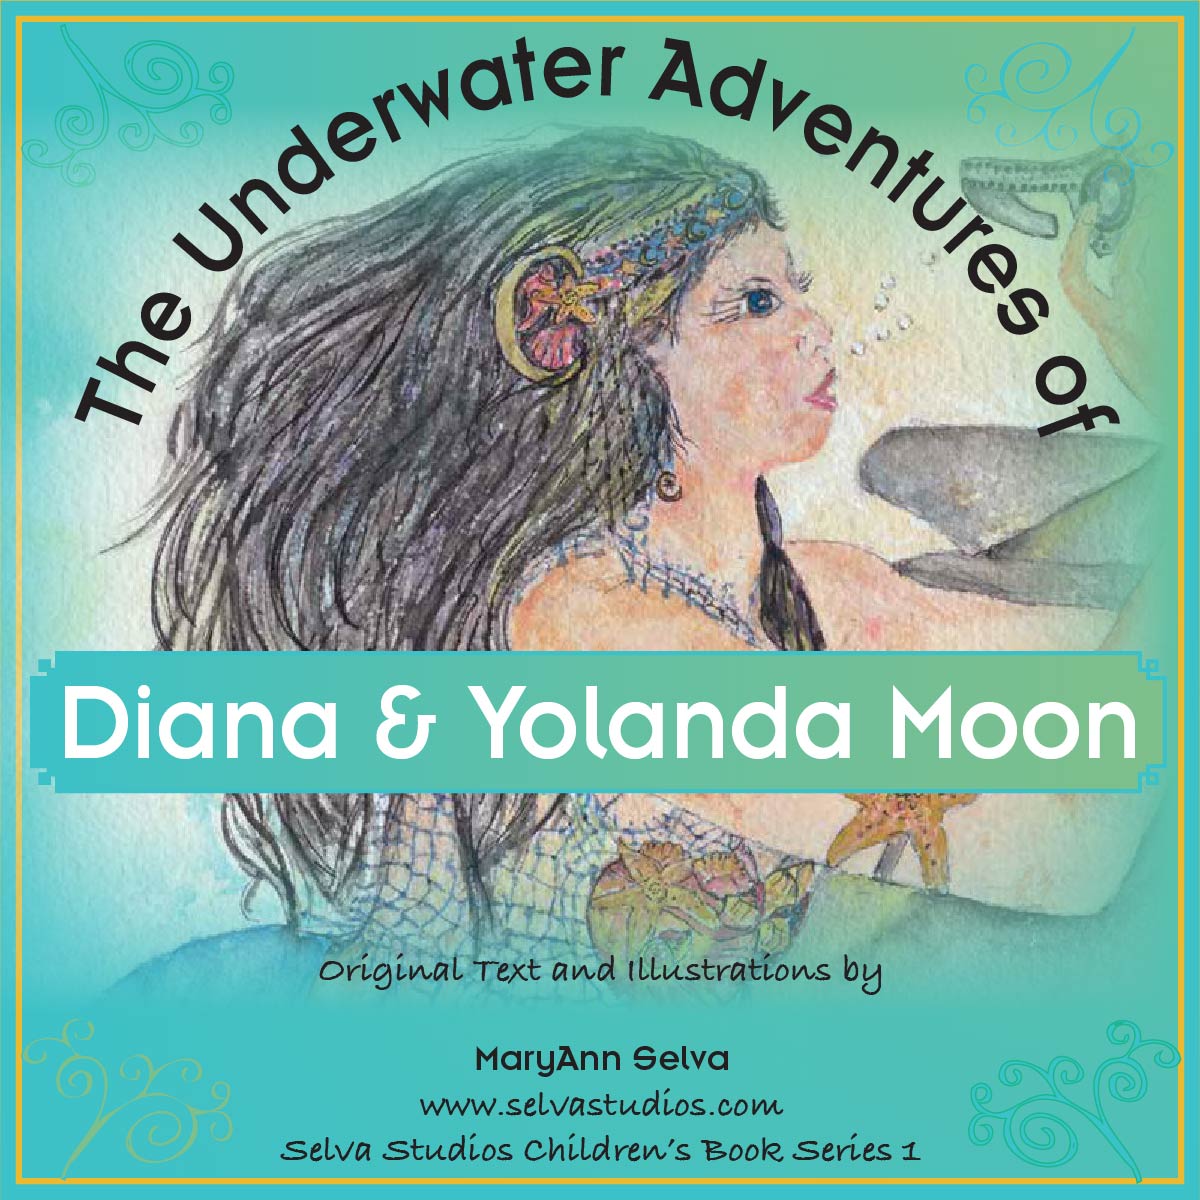 Diana & Yolanda Moon